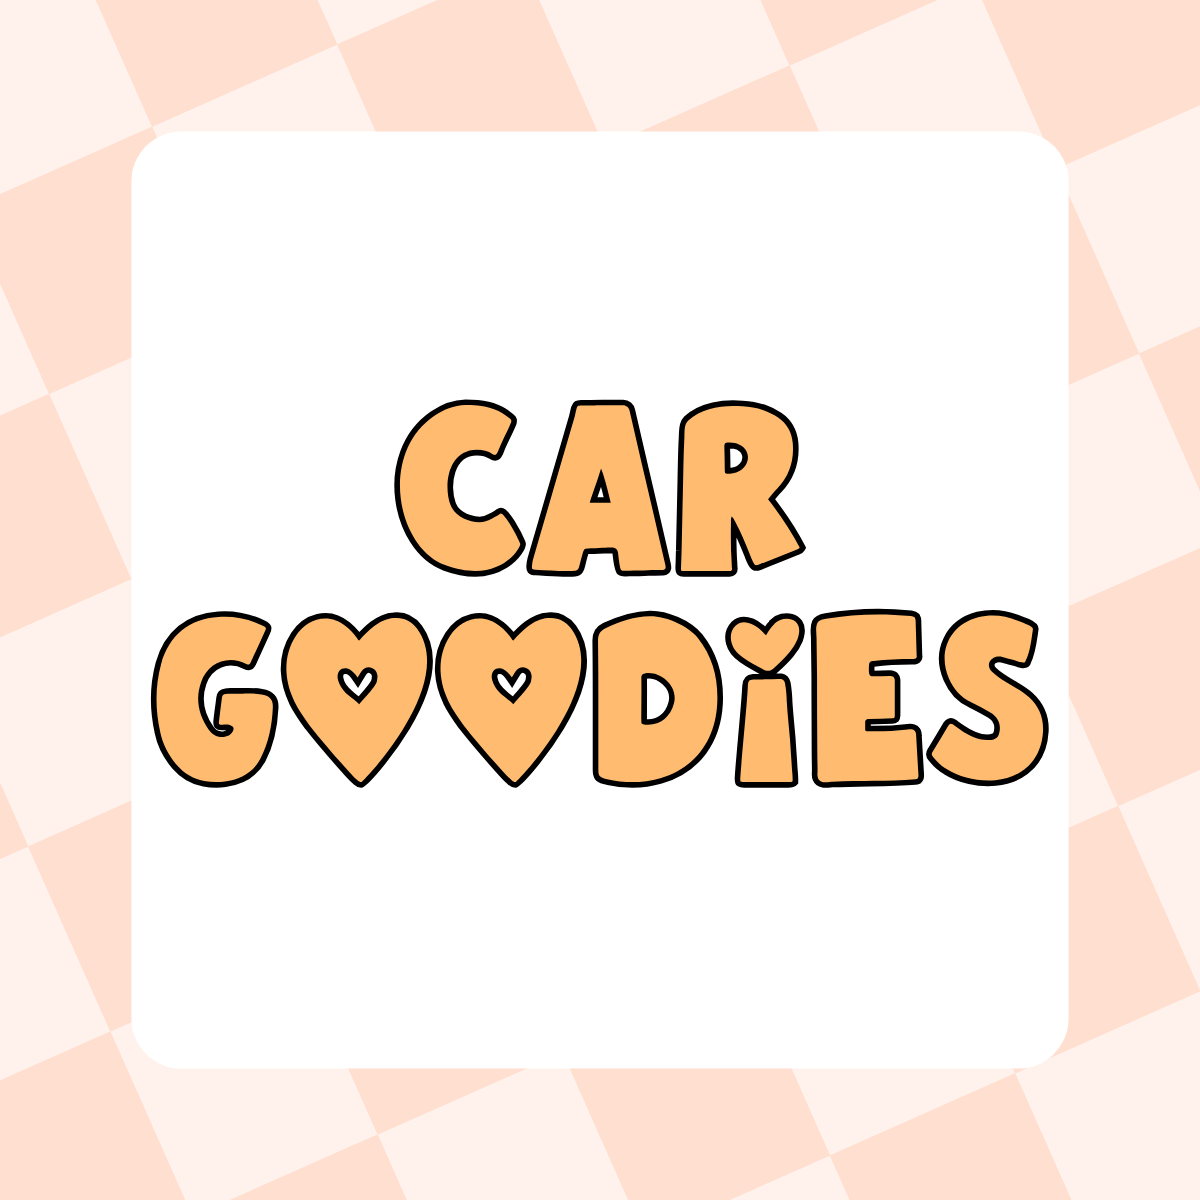 Car Goodies